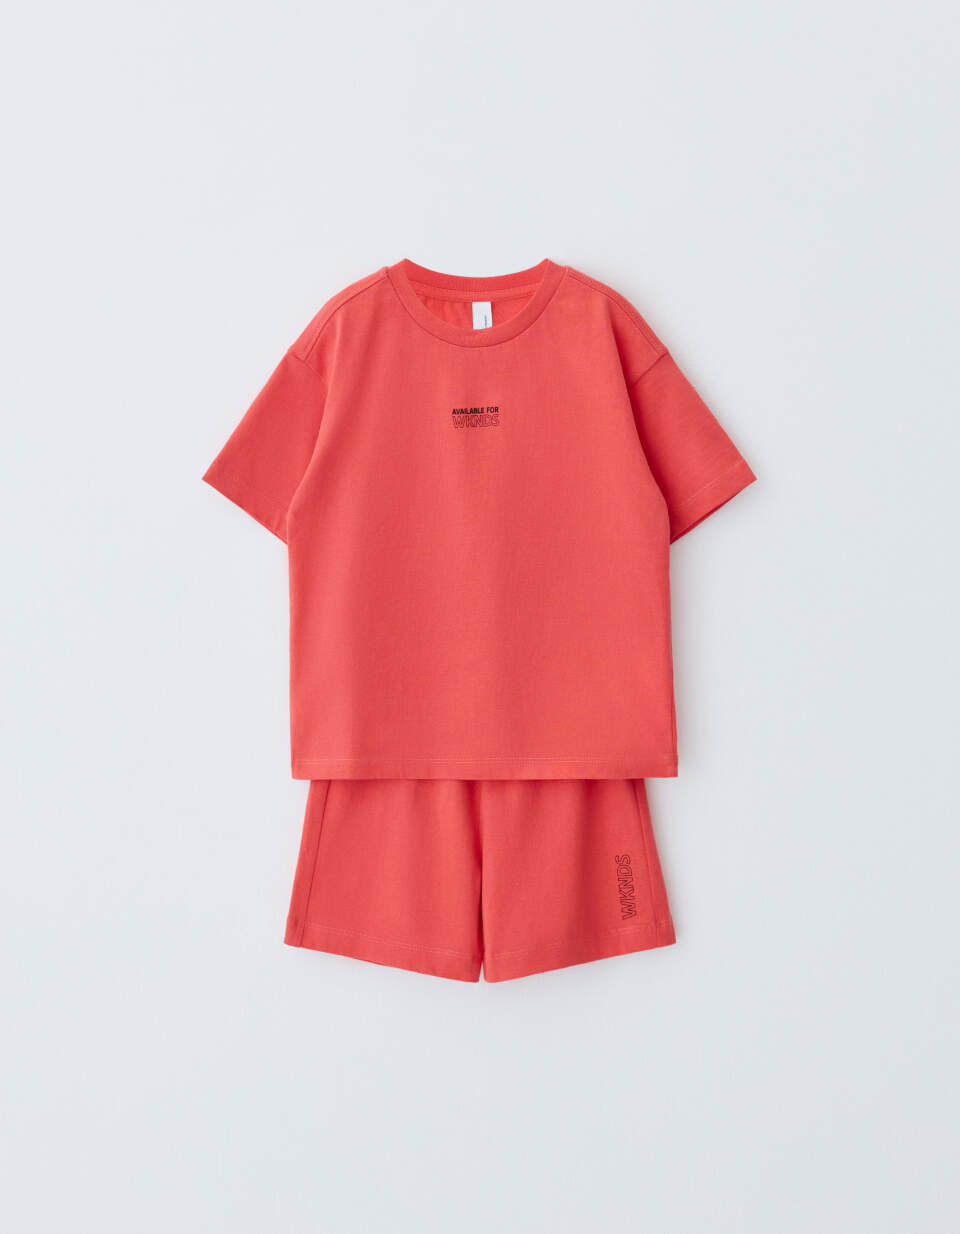 Комплект из футболки и шорт детский комплект из двух предметов футболки и шорт 3 мес 60 см оранжевый